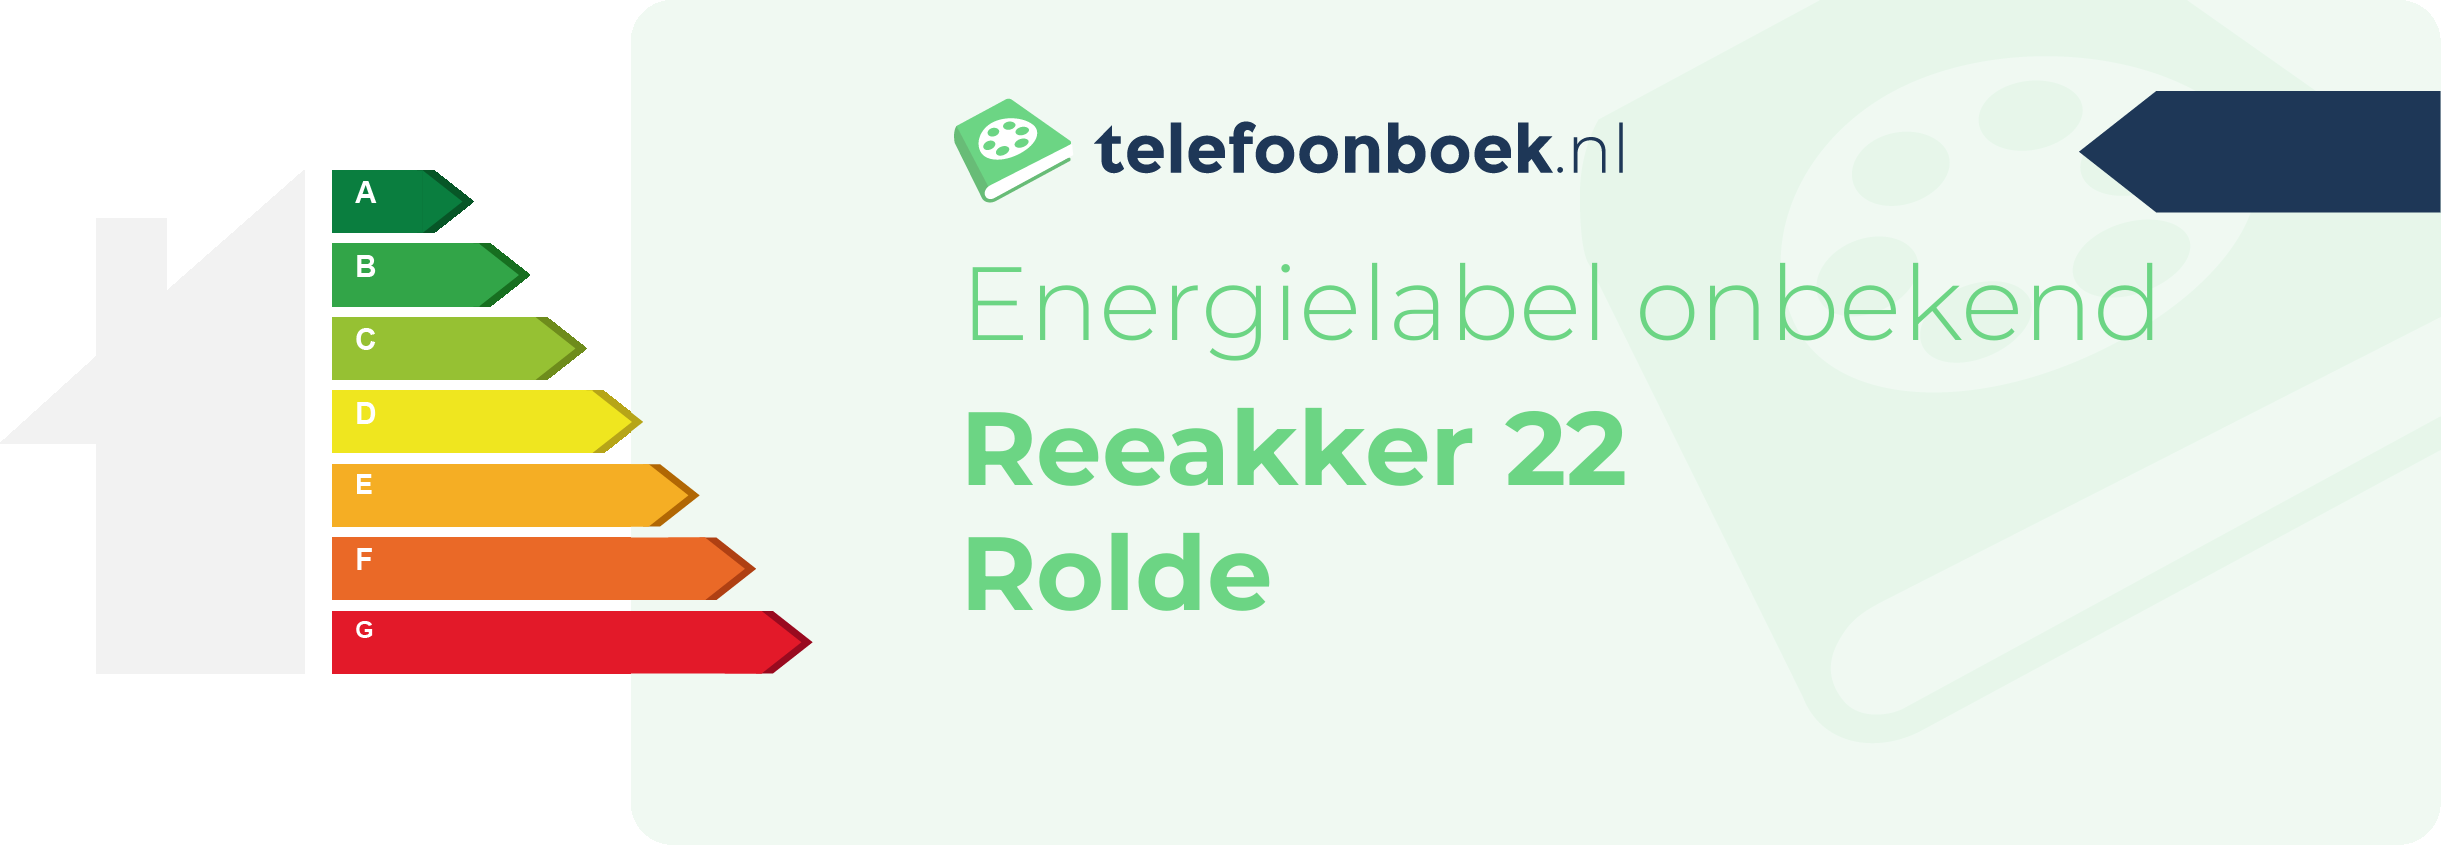 Energielabel Reeakker 22 Rolde